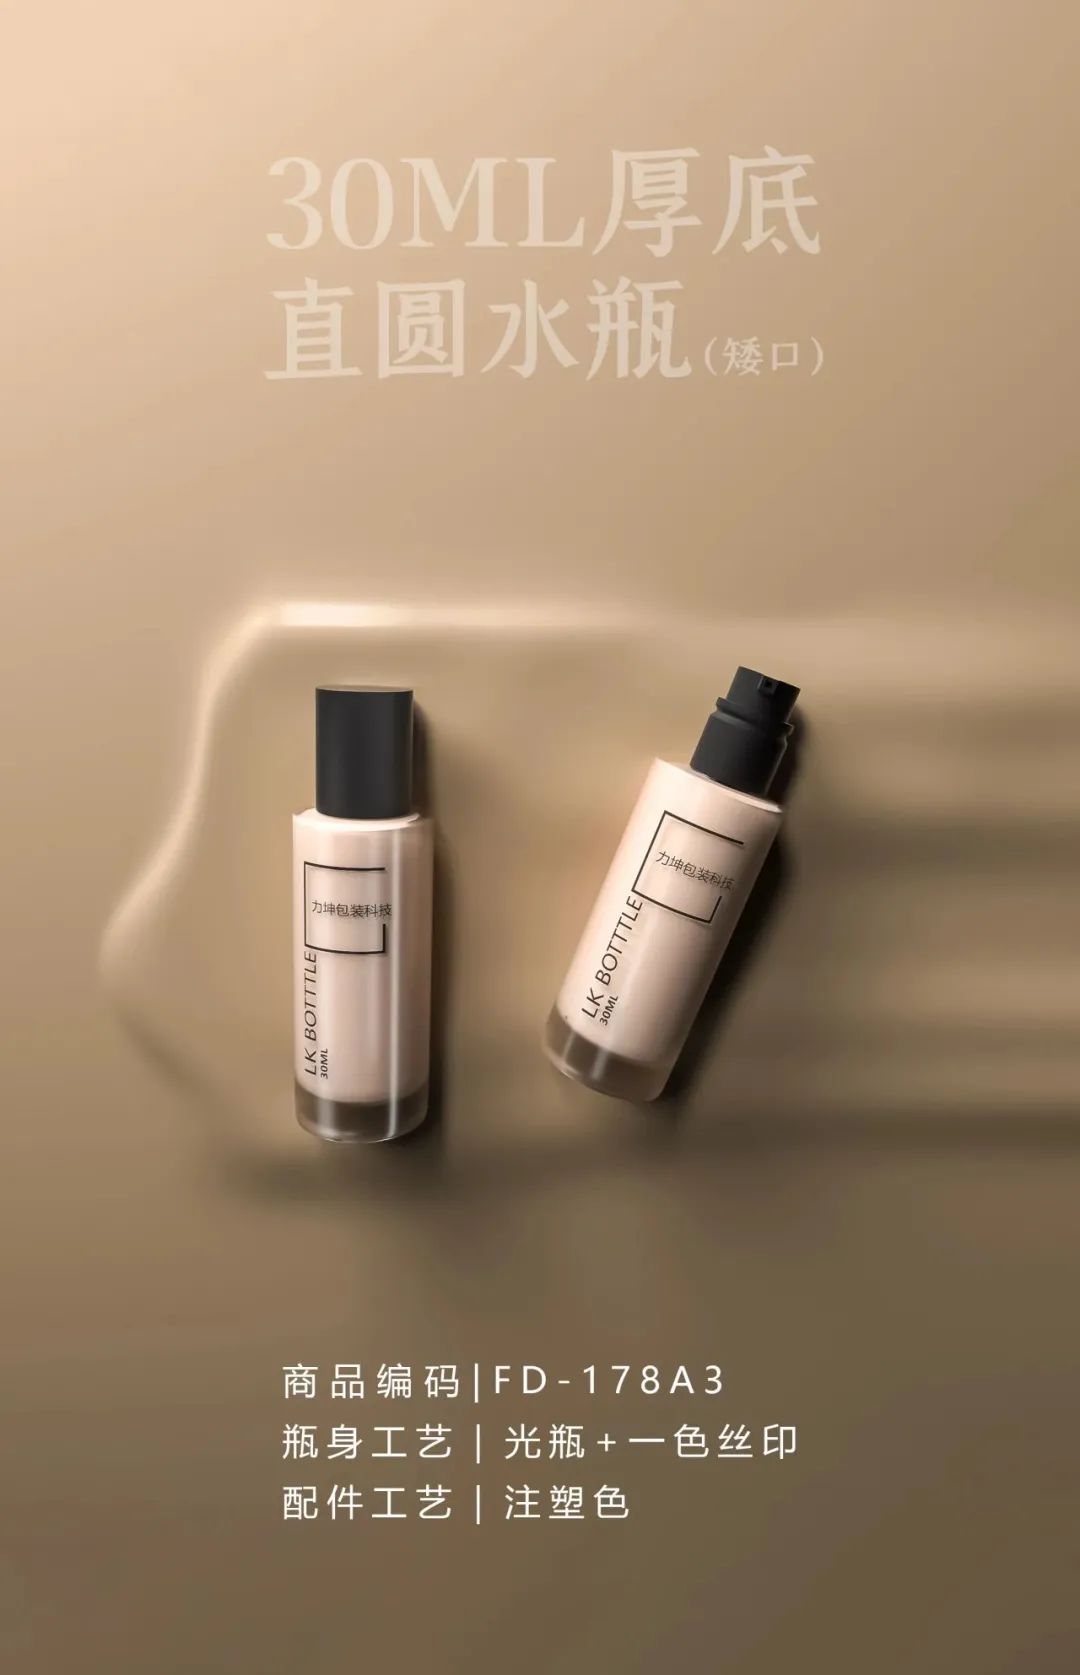 Дизайн упаковки тонального крема, конкурирующий с «ShuUemura»